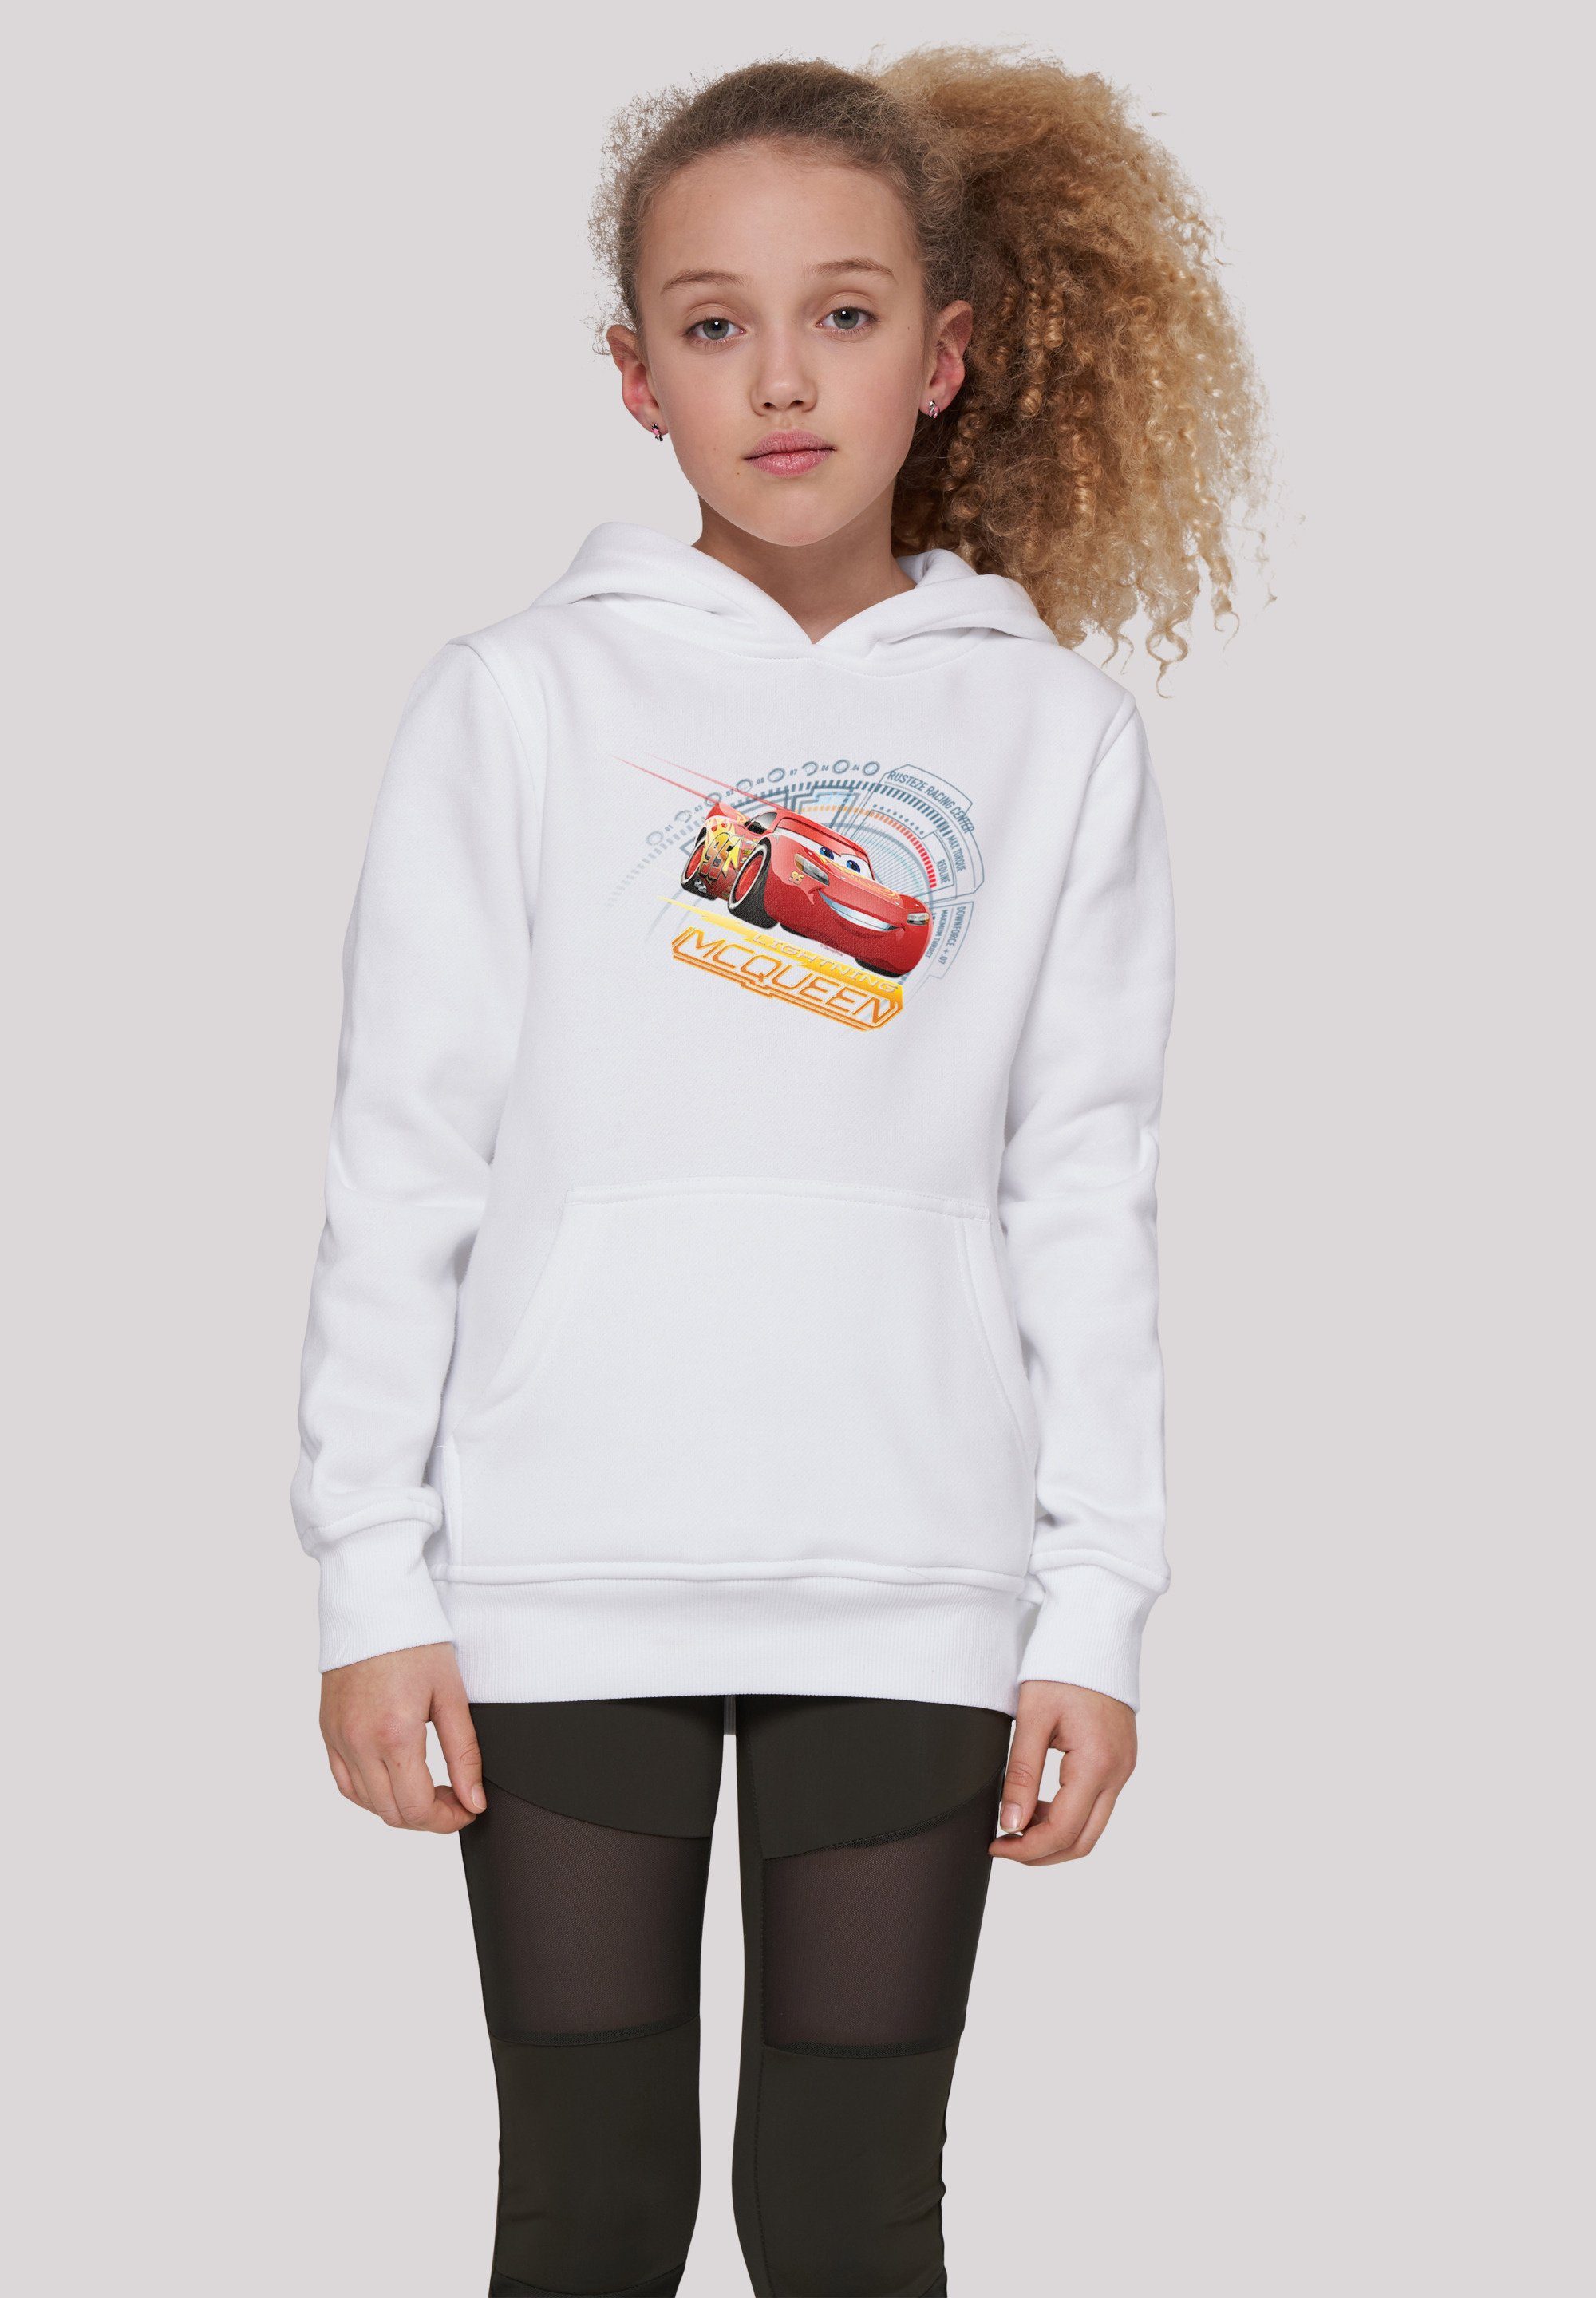 weiß Kinder,Premium McQueen Lightning Merch,Jungen,Mädchen,Bedruckt Unisex Sweatshirt Disney Cars F4NT4STIC